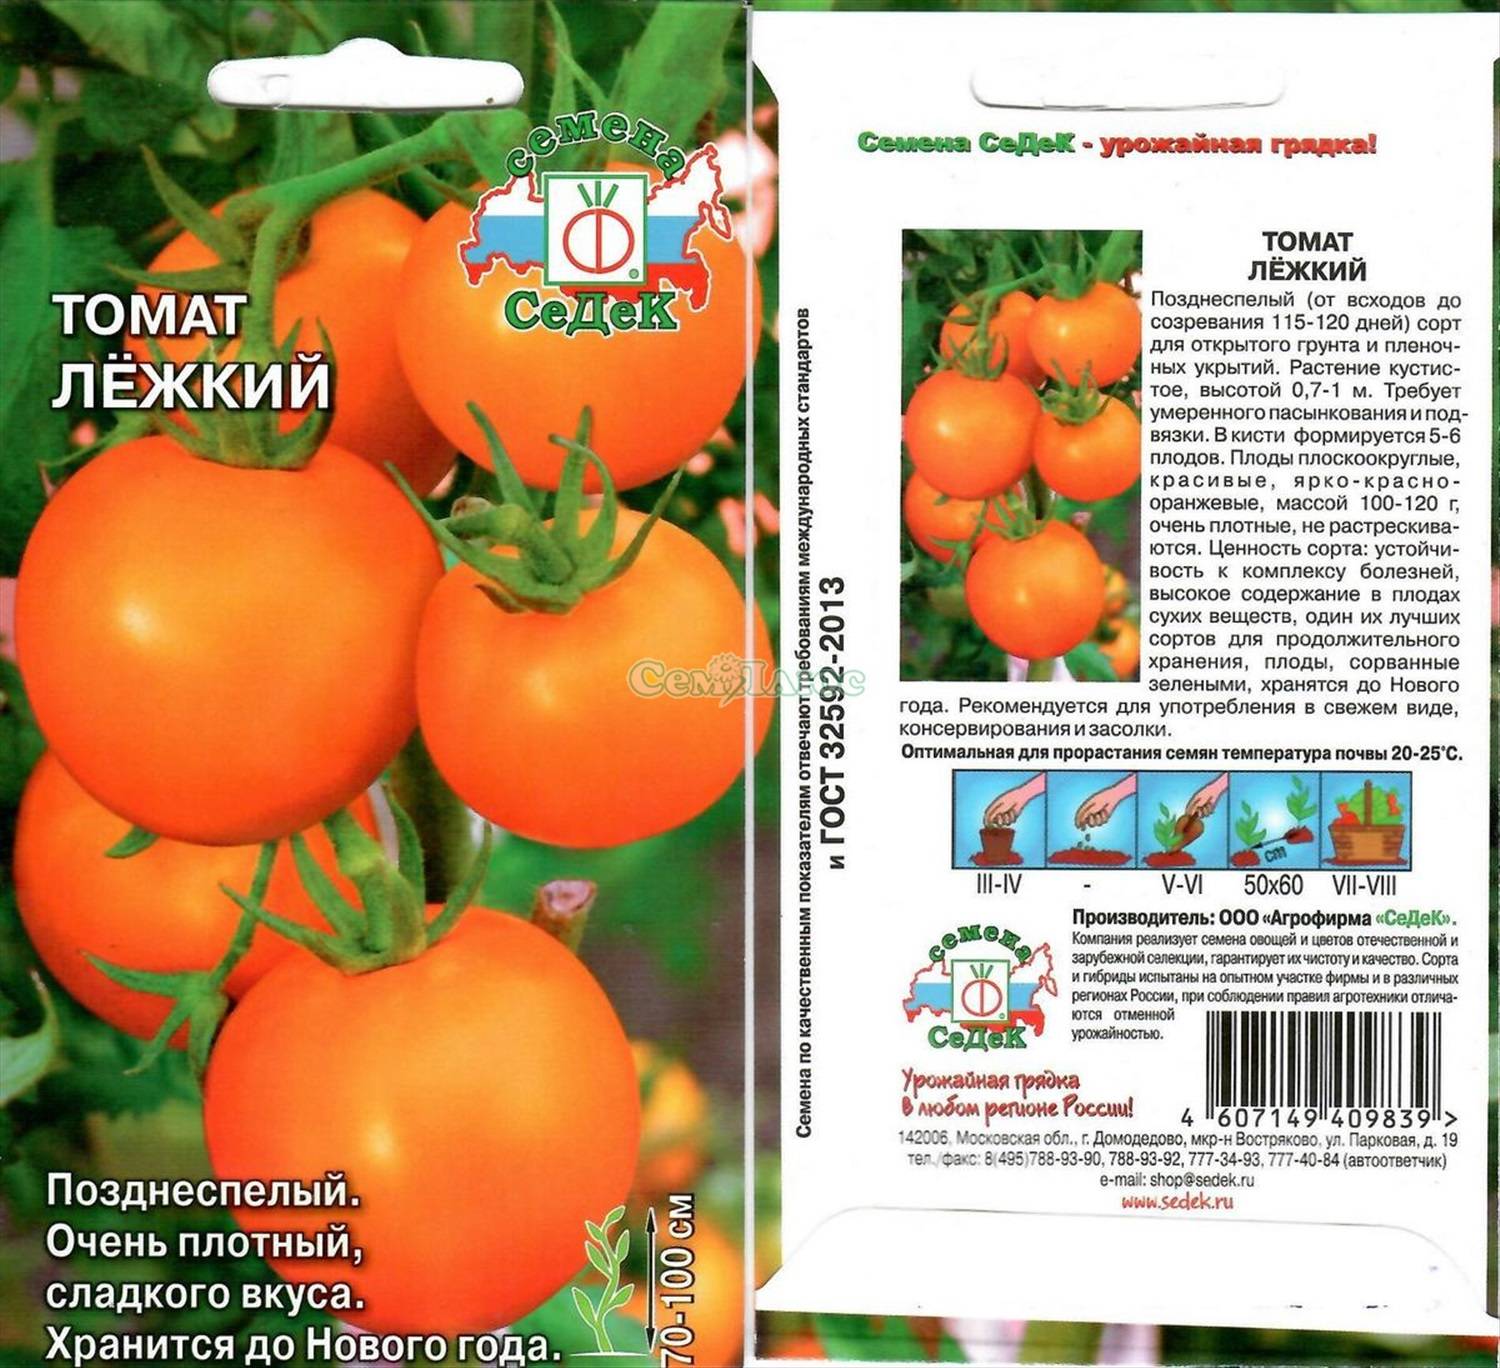 Томат дворцовый: характеристика и описание сорта, отзывы тех кто сажал помидоры об их урожайности, фото семян